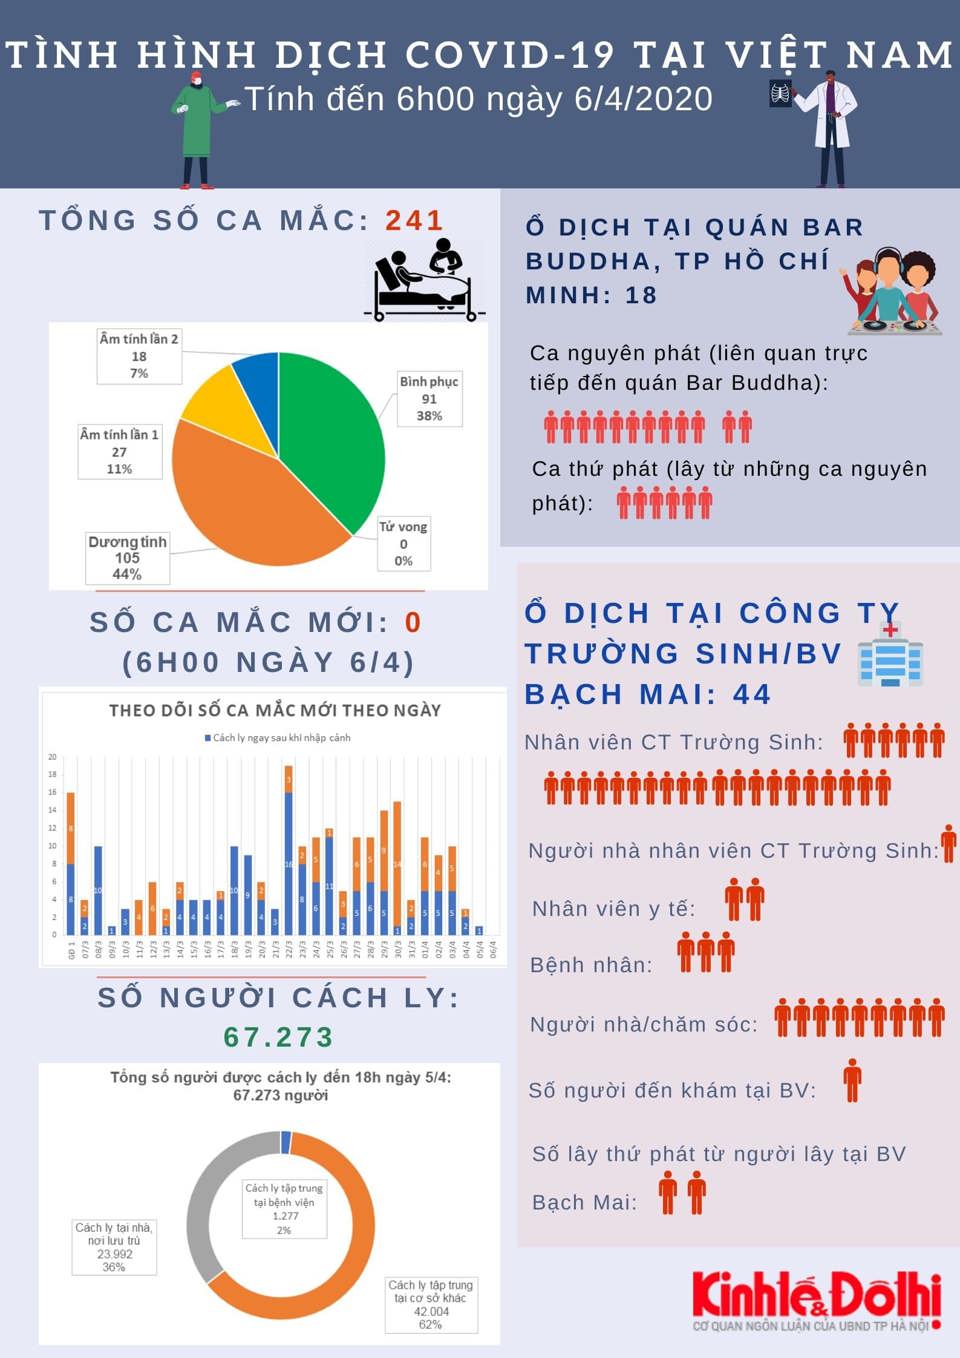 [Infographic] Chi tiết tình hình dịch Covid-19 tại Việt Nam tính đến sáng 6/4 - Ảnh 1